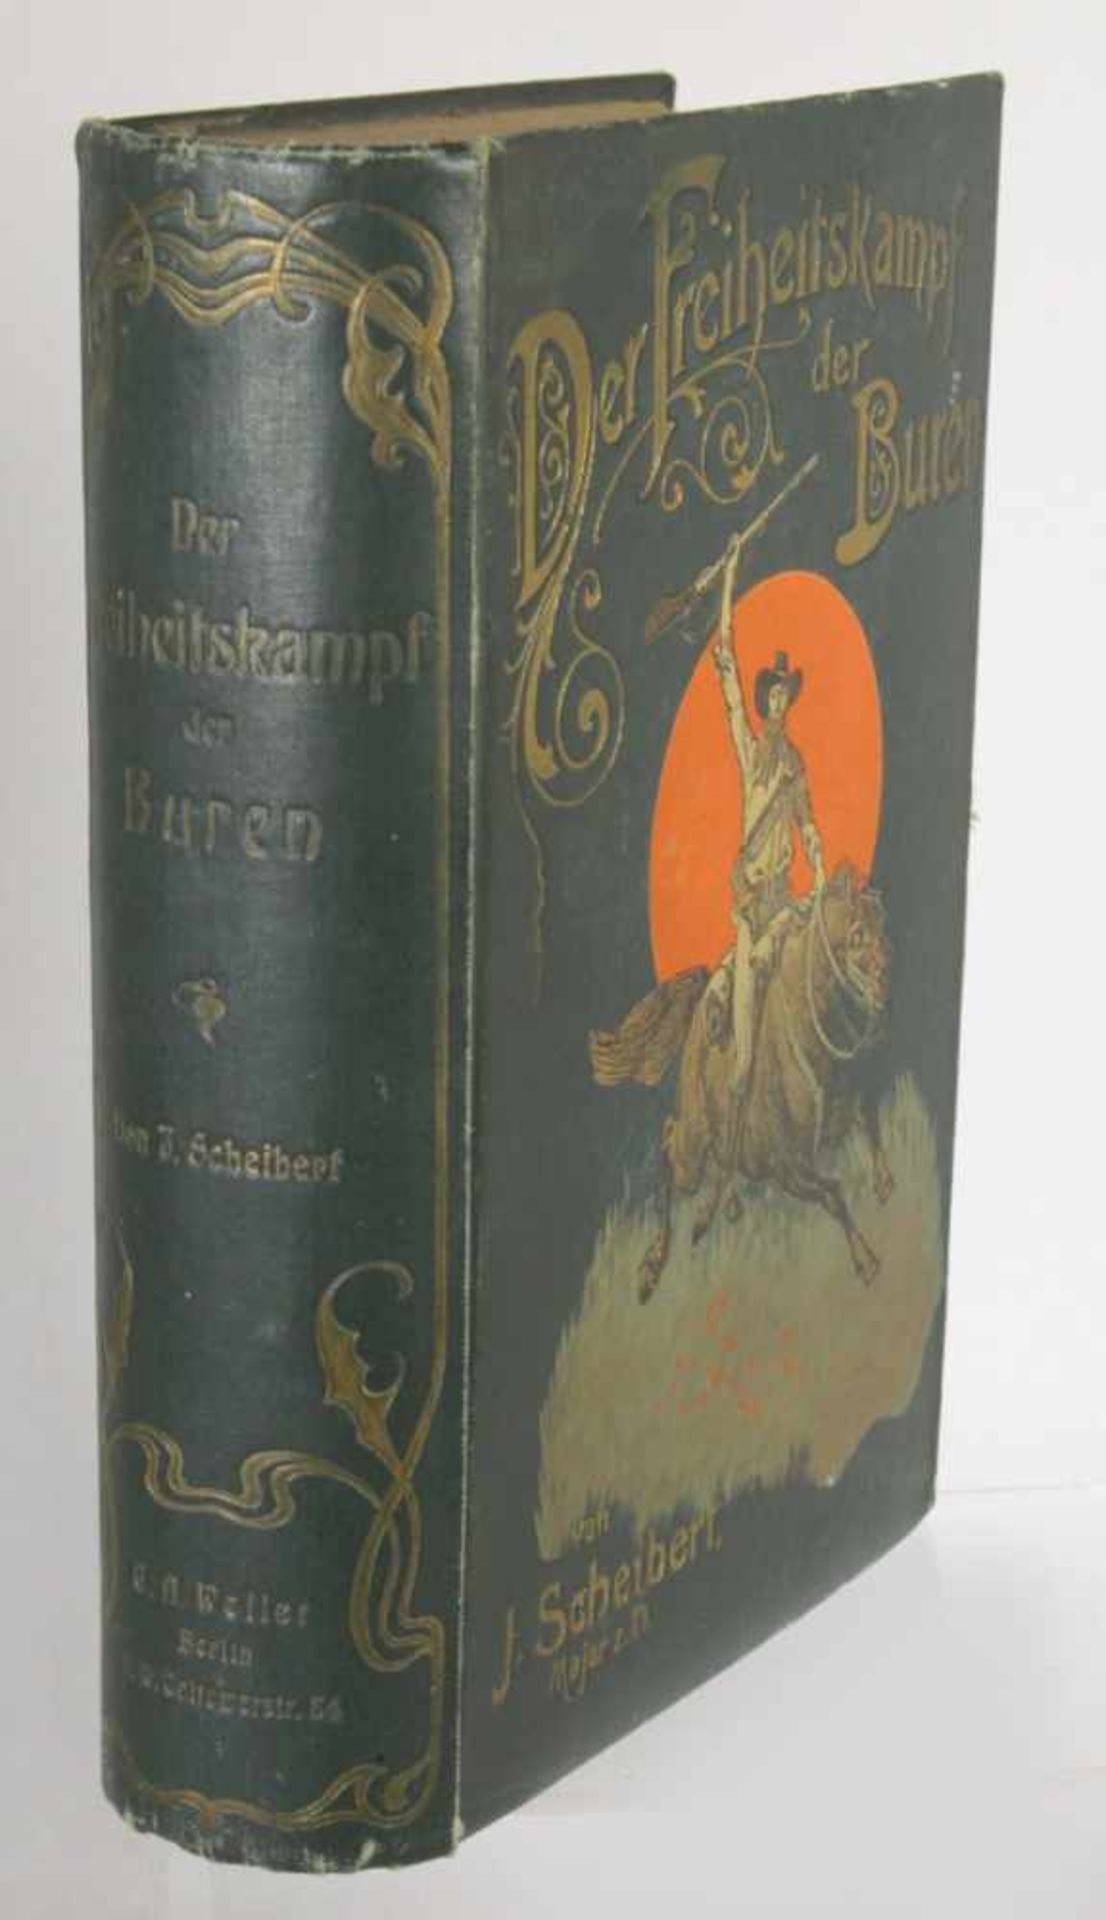 Buch, "Der Freiheitskampf der Buren", von J. Scheibert, Berlin, 1903, gebrauchter Zustand